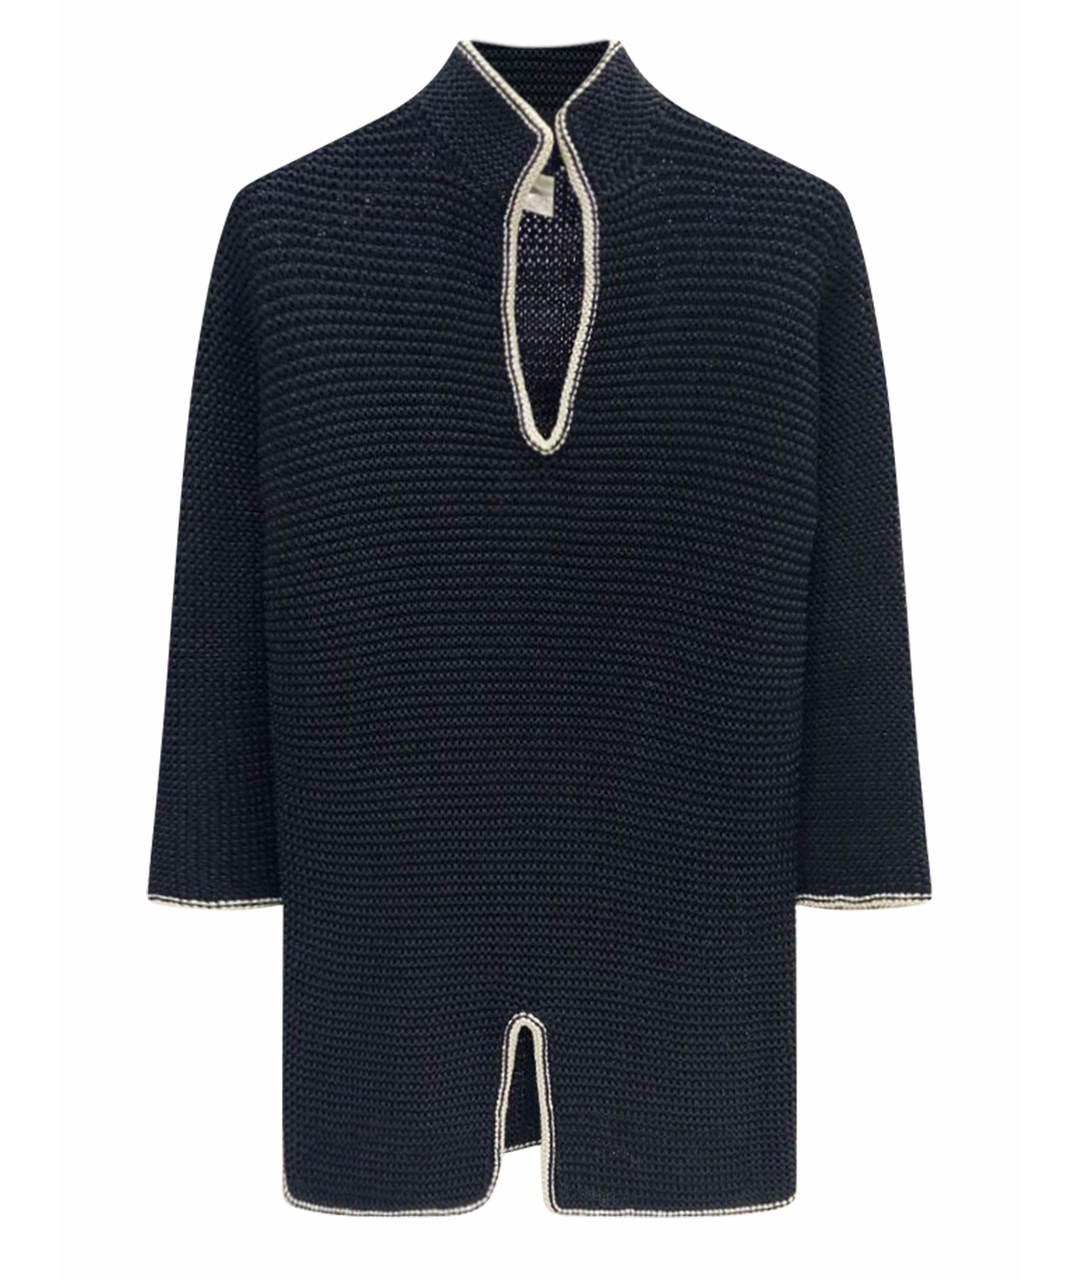 CHANEL PRE-OWNED Черный полиамидовый джемпер / свитер, фото 1